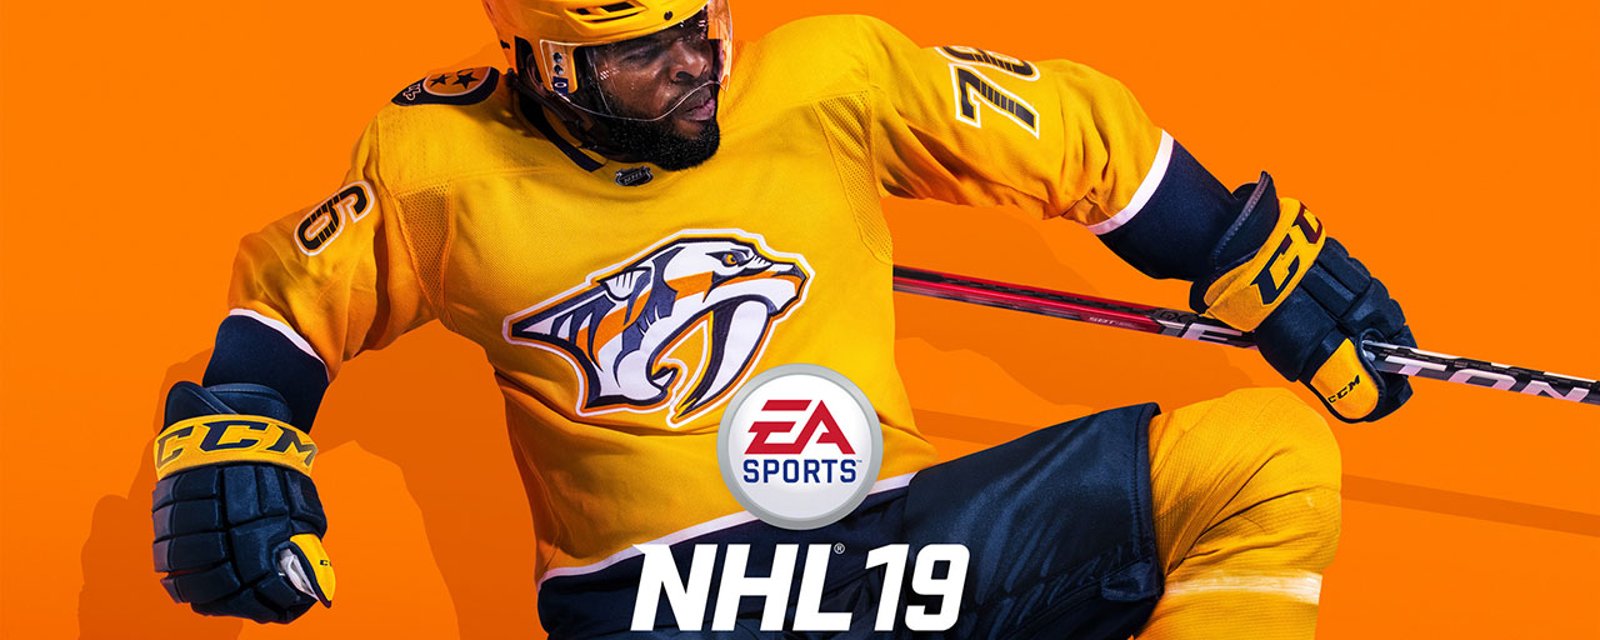 EA Sports dévoile la trame sonore de NHL 19!